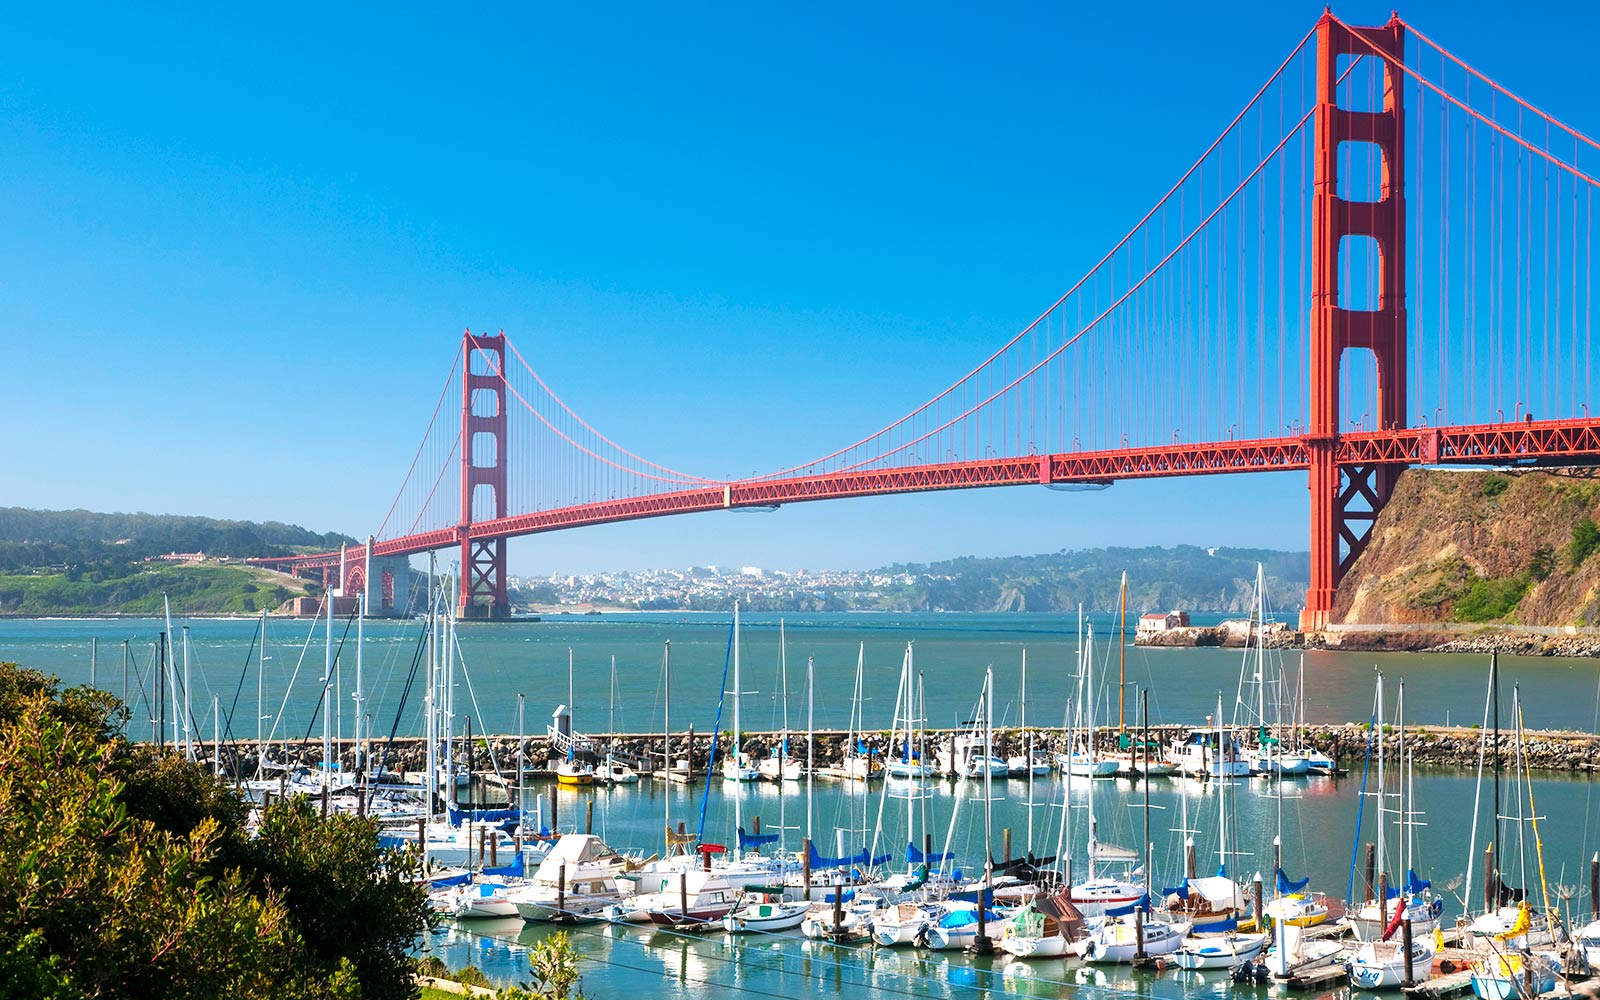 San Francisco City - du lịch hoàn mỹ - Một trong những cây cầu nổi tiếng nhất của thành phố.